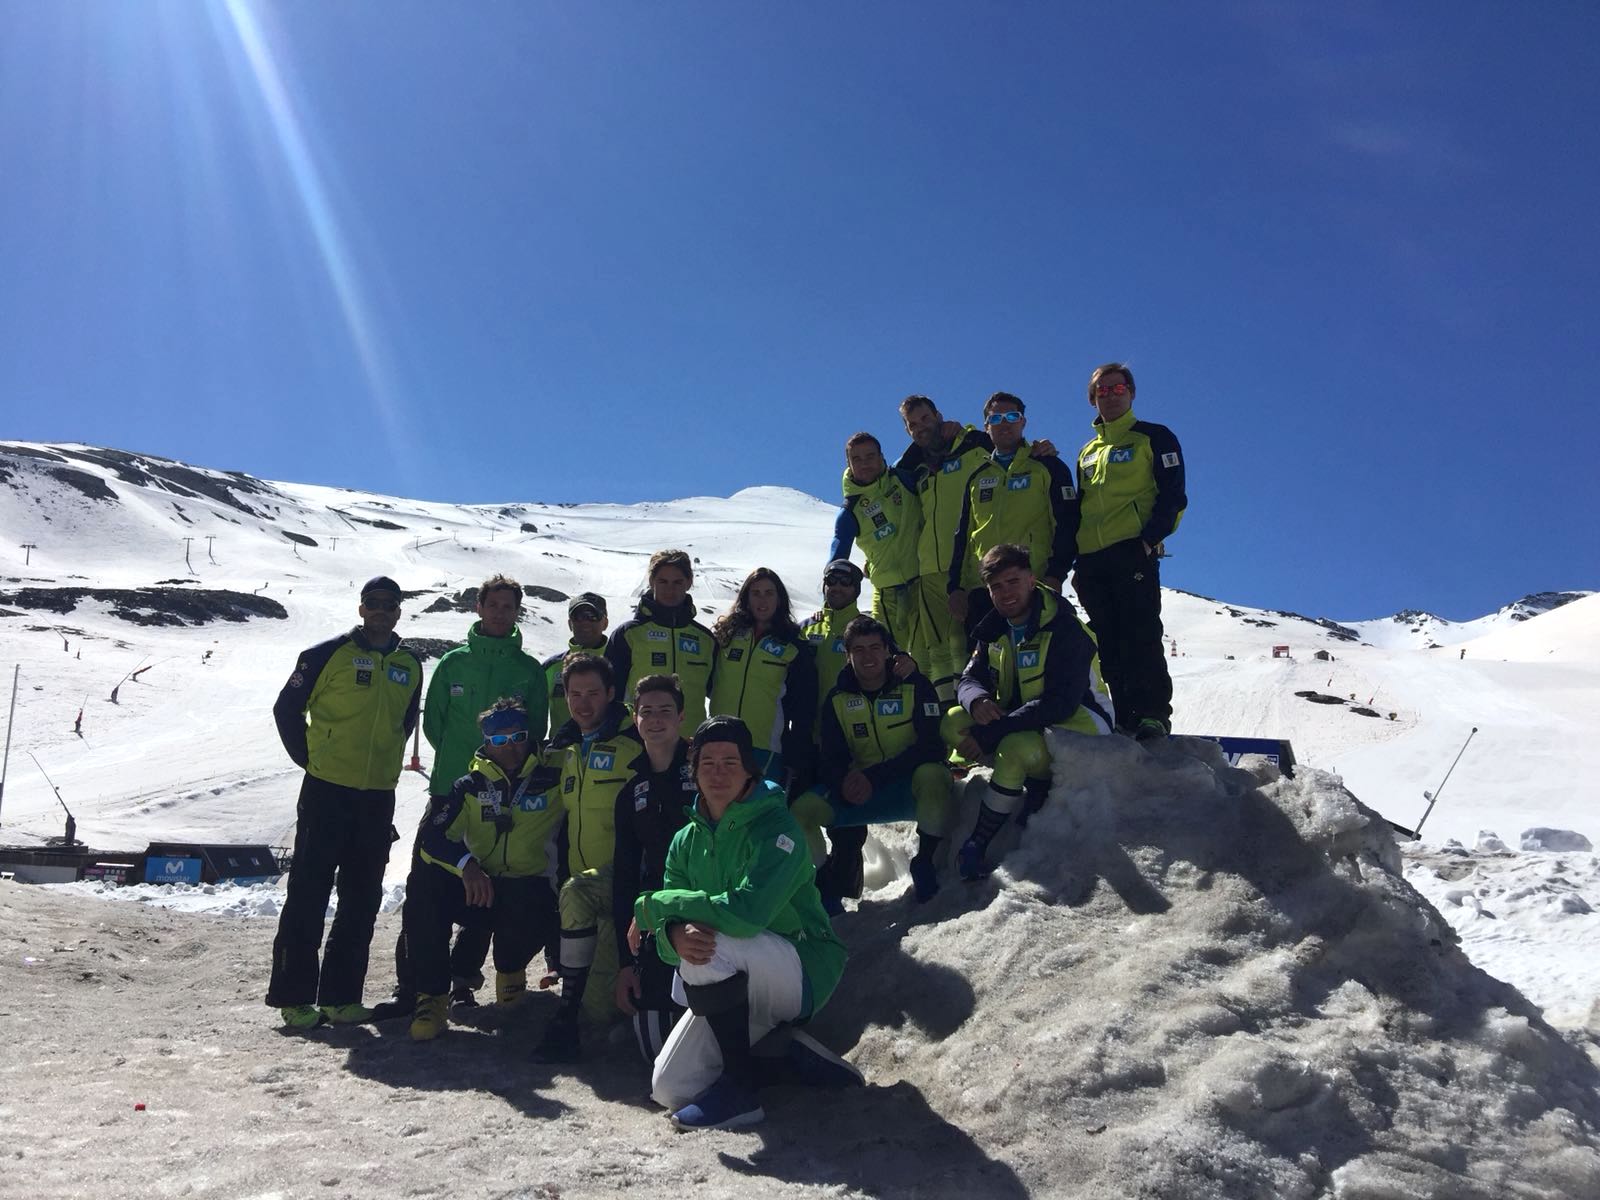 La gran cantidad de nieve permite los entrenos de los esquiadores de la RFEDI en Sierra Nevada